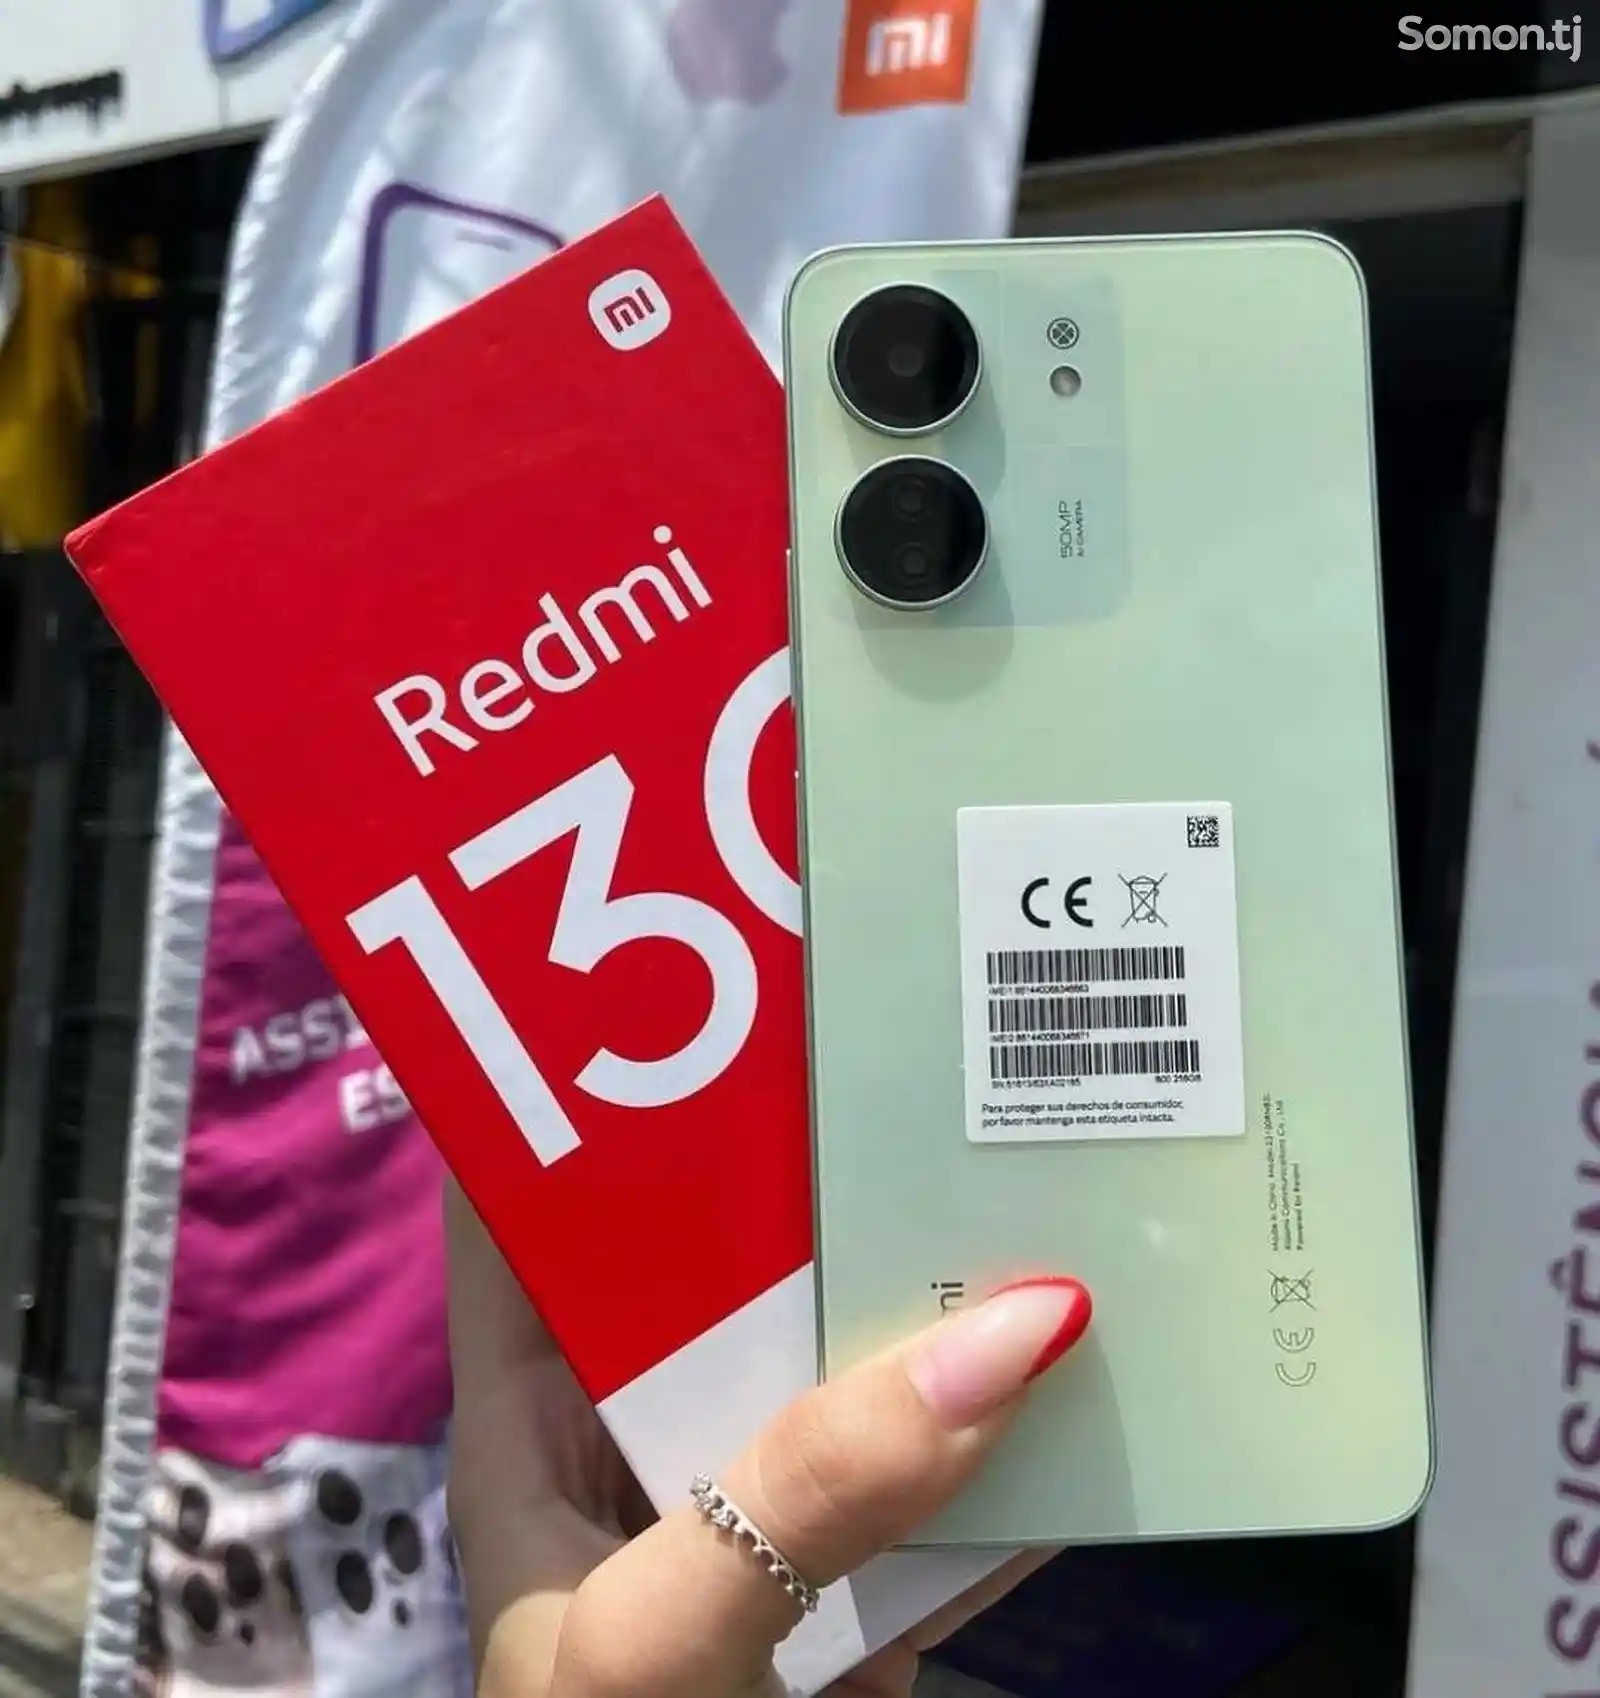 Xiaomi Redmi 13C 8+3/256Gb-4